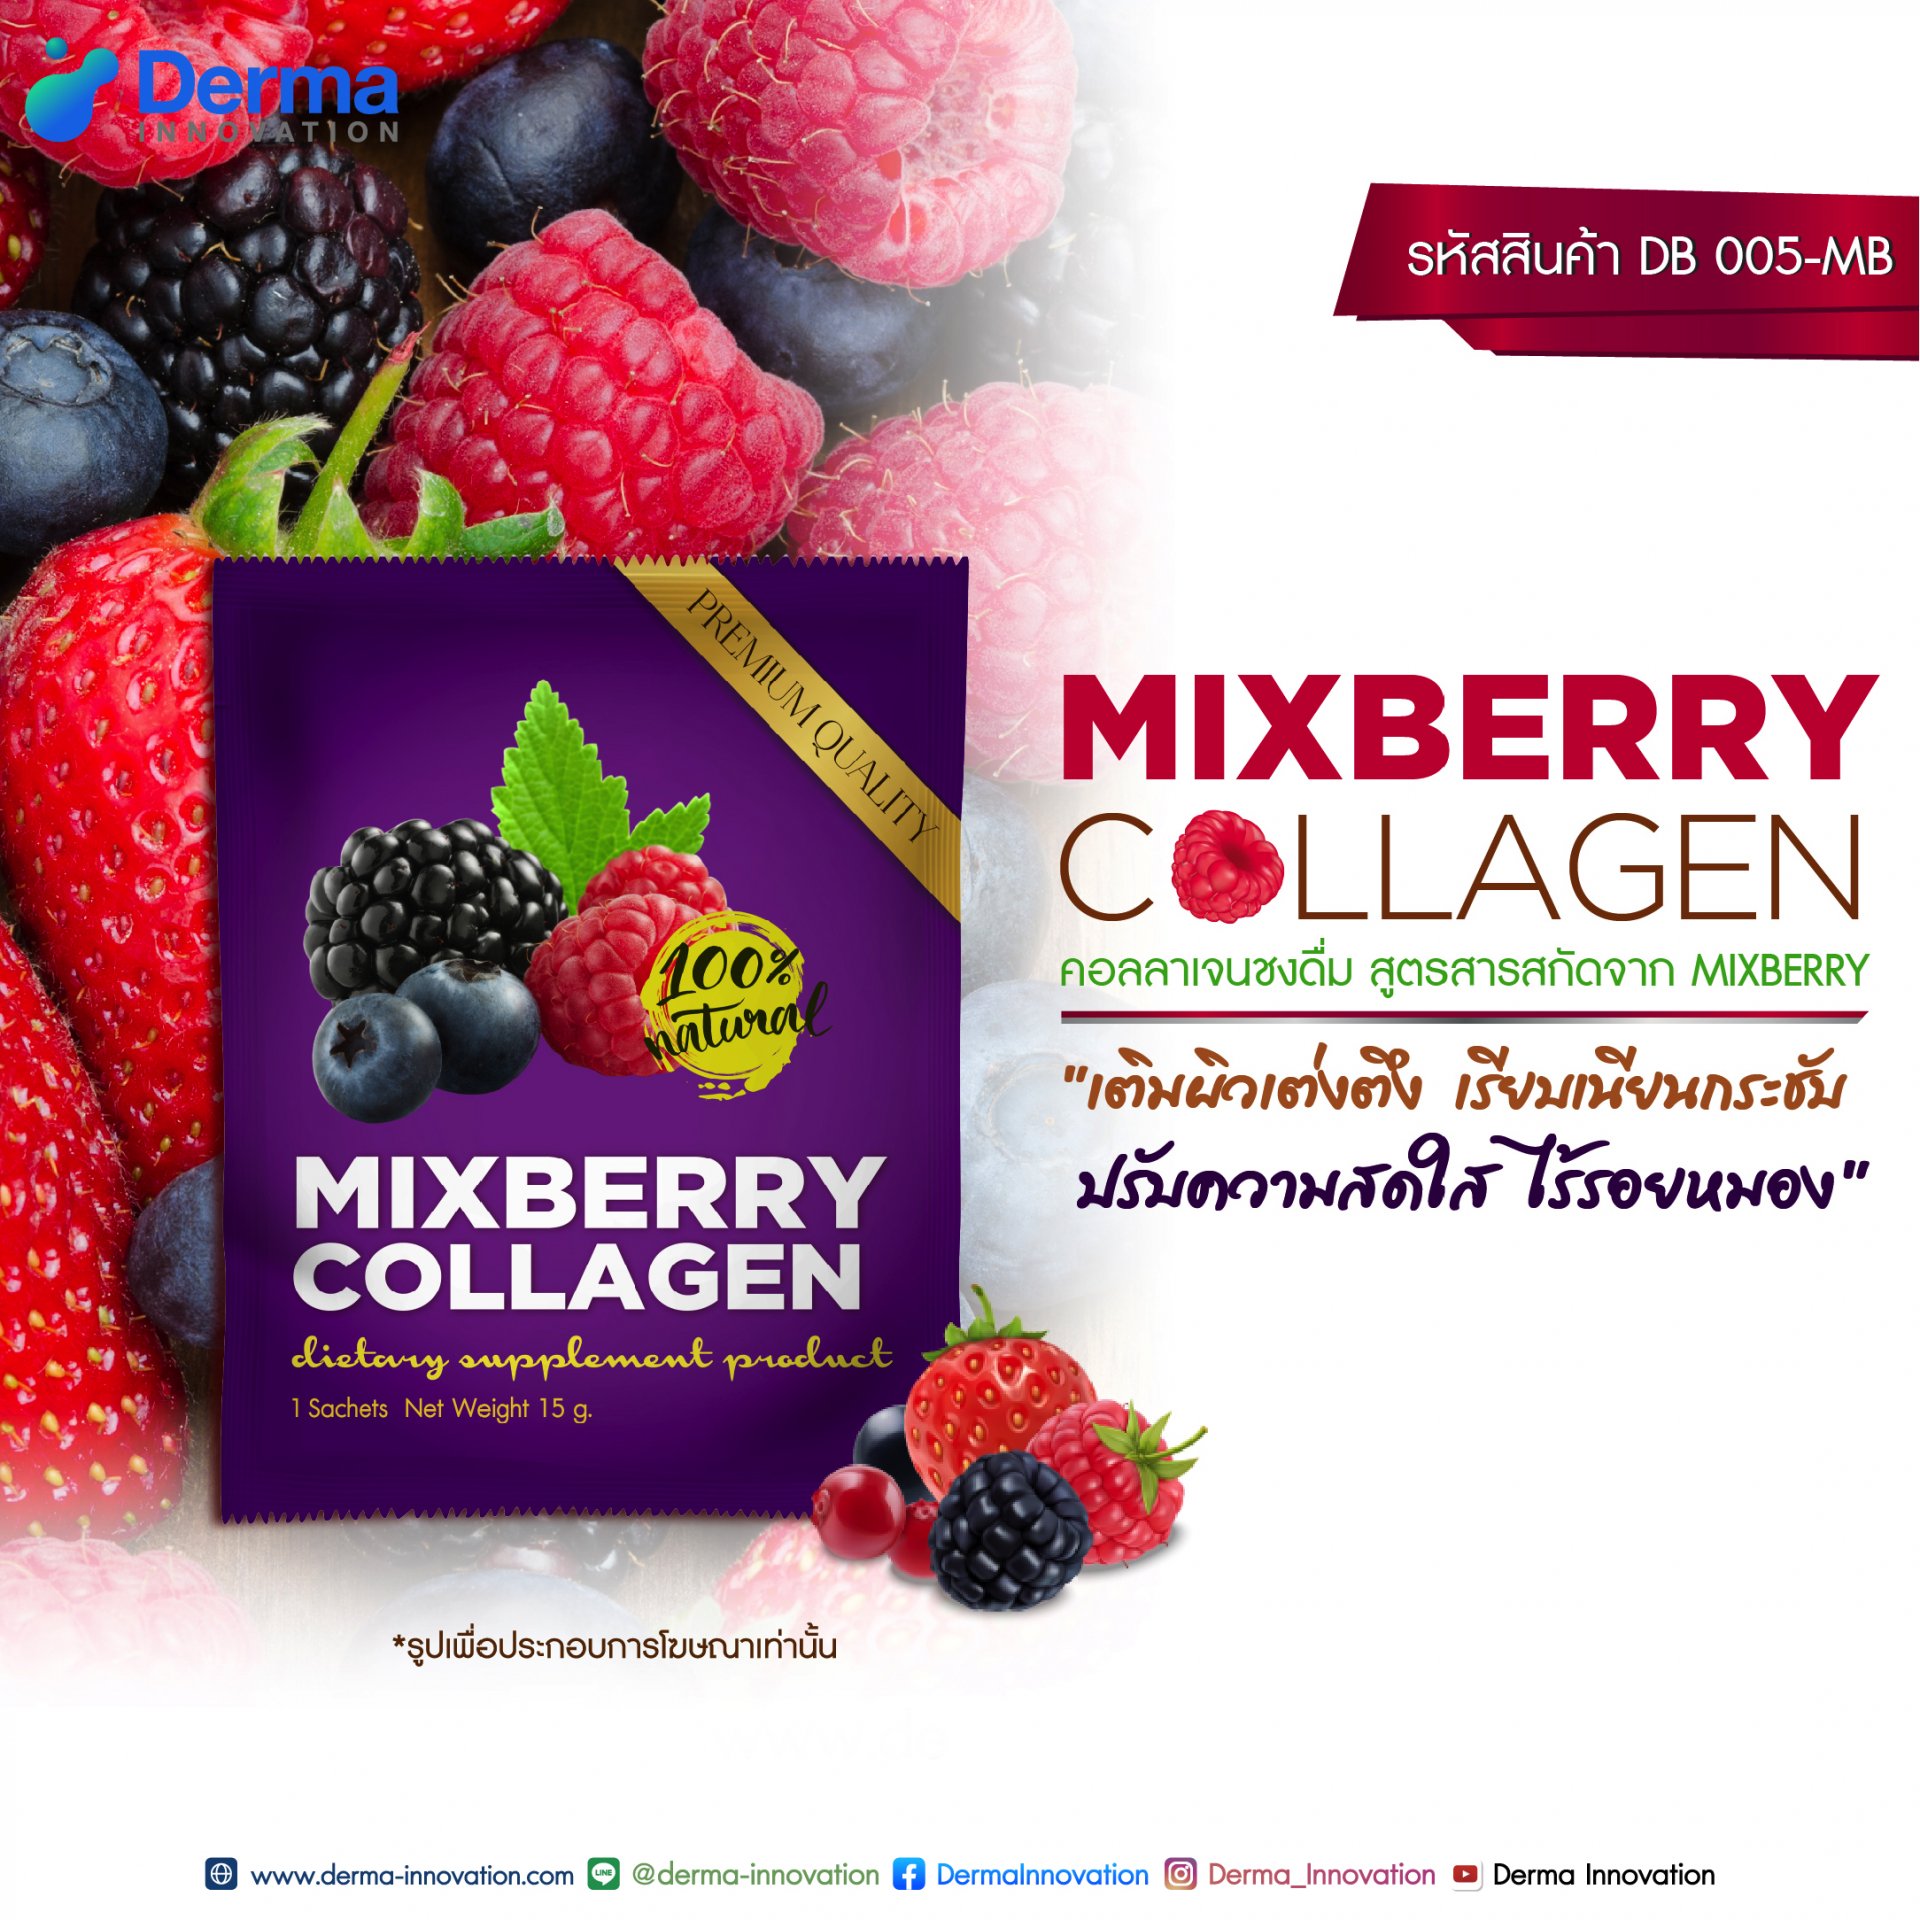 Mixberry Collagen  มิกซ์เบอร์รี่ คอลลาเจน